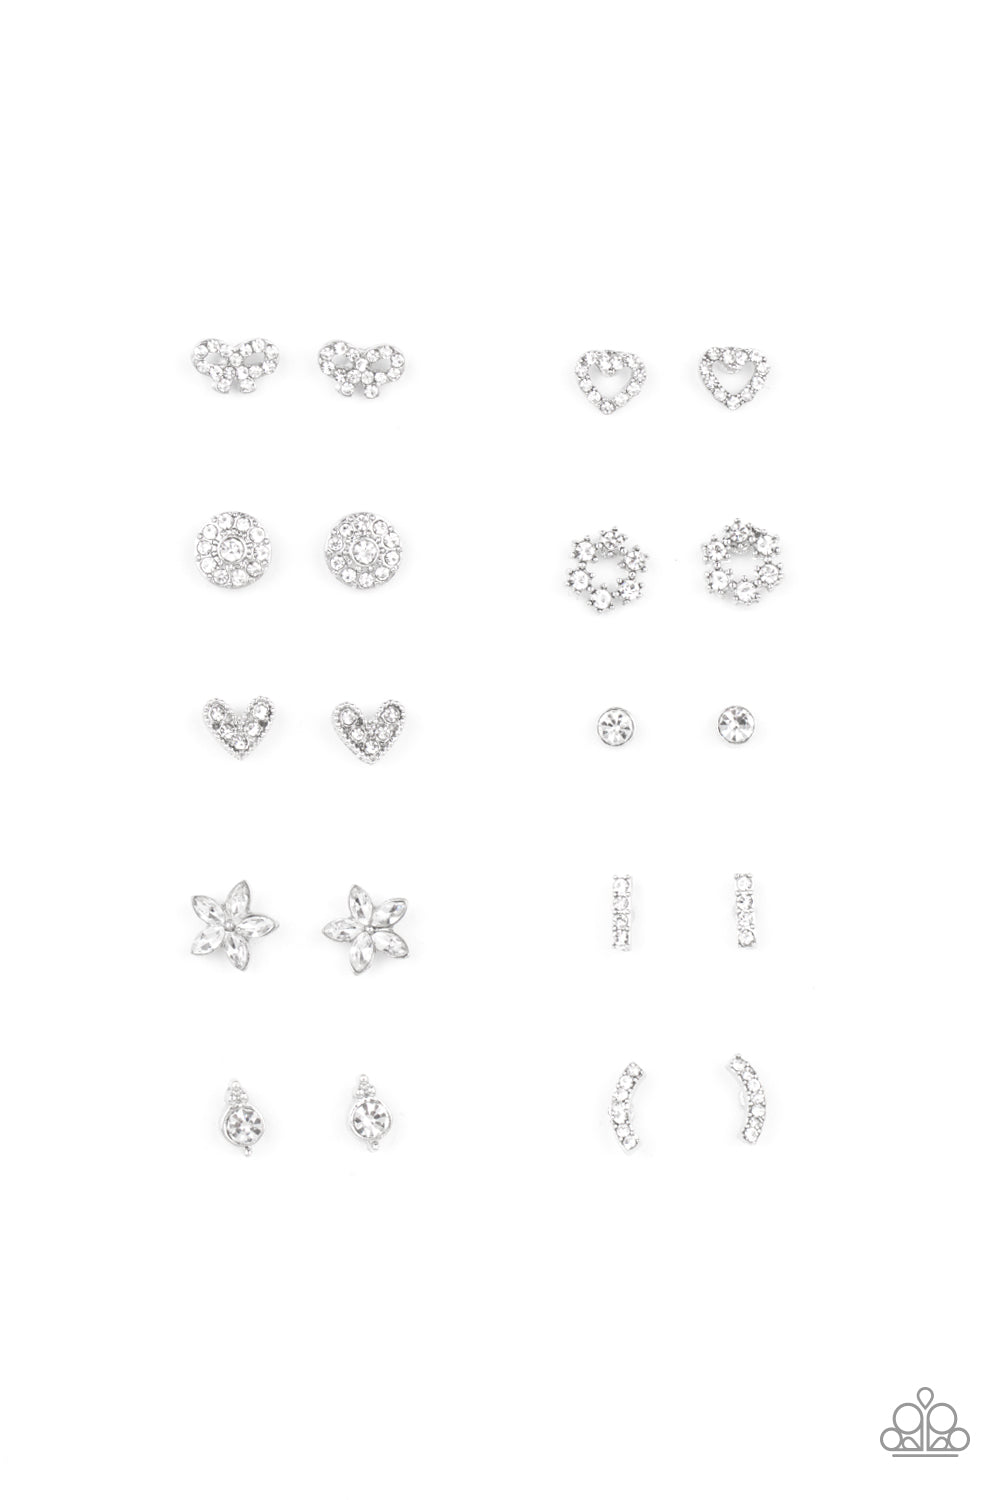 Starlet Shimmer White Rhinestone Stud Earring 10-Pack♥Starlet Shimmer Earrings ♥ Paparazzi ♥